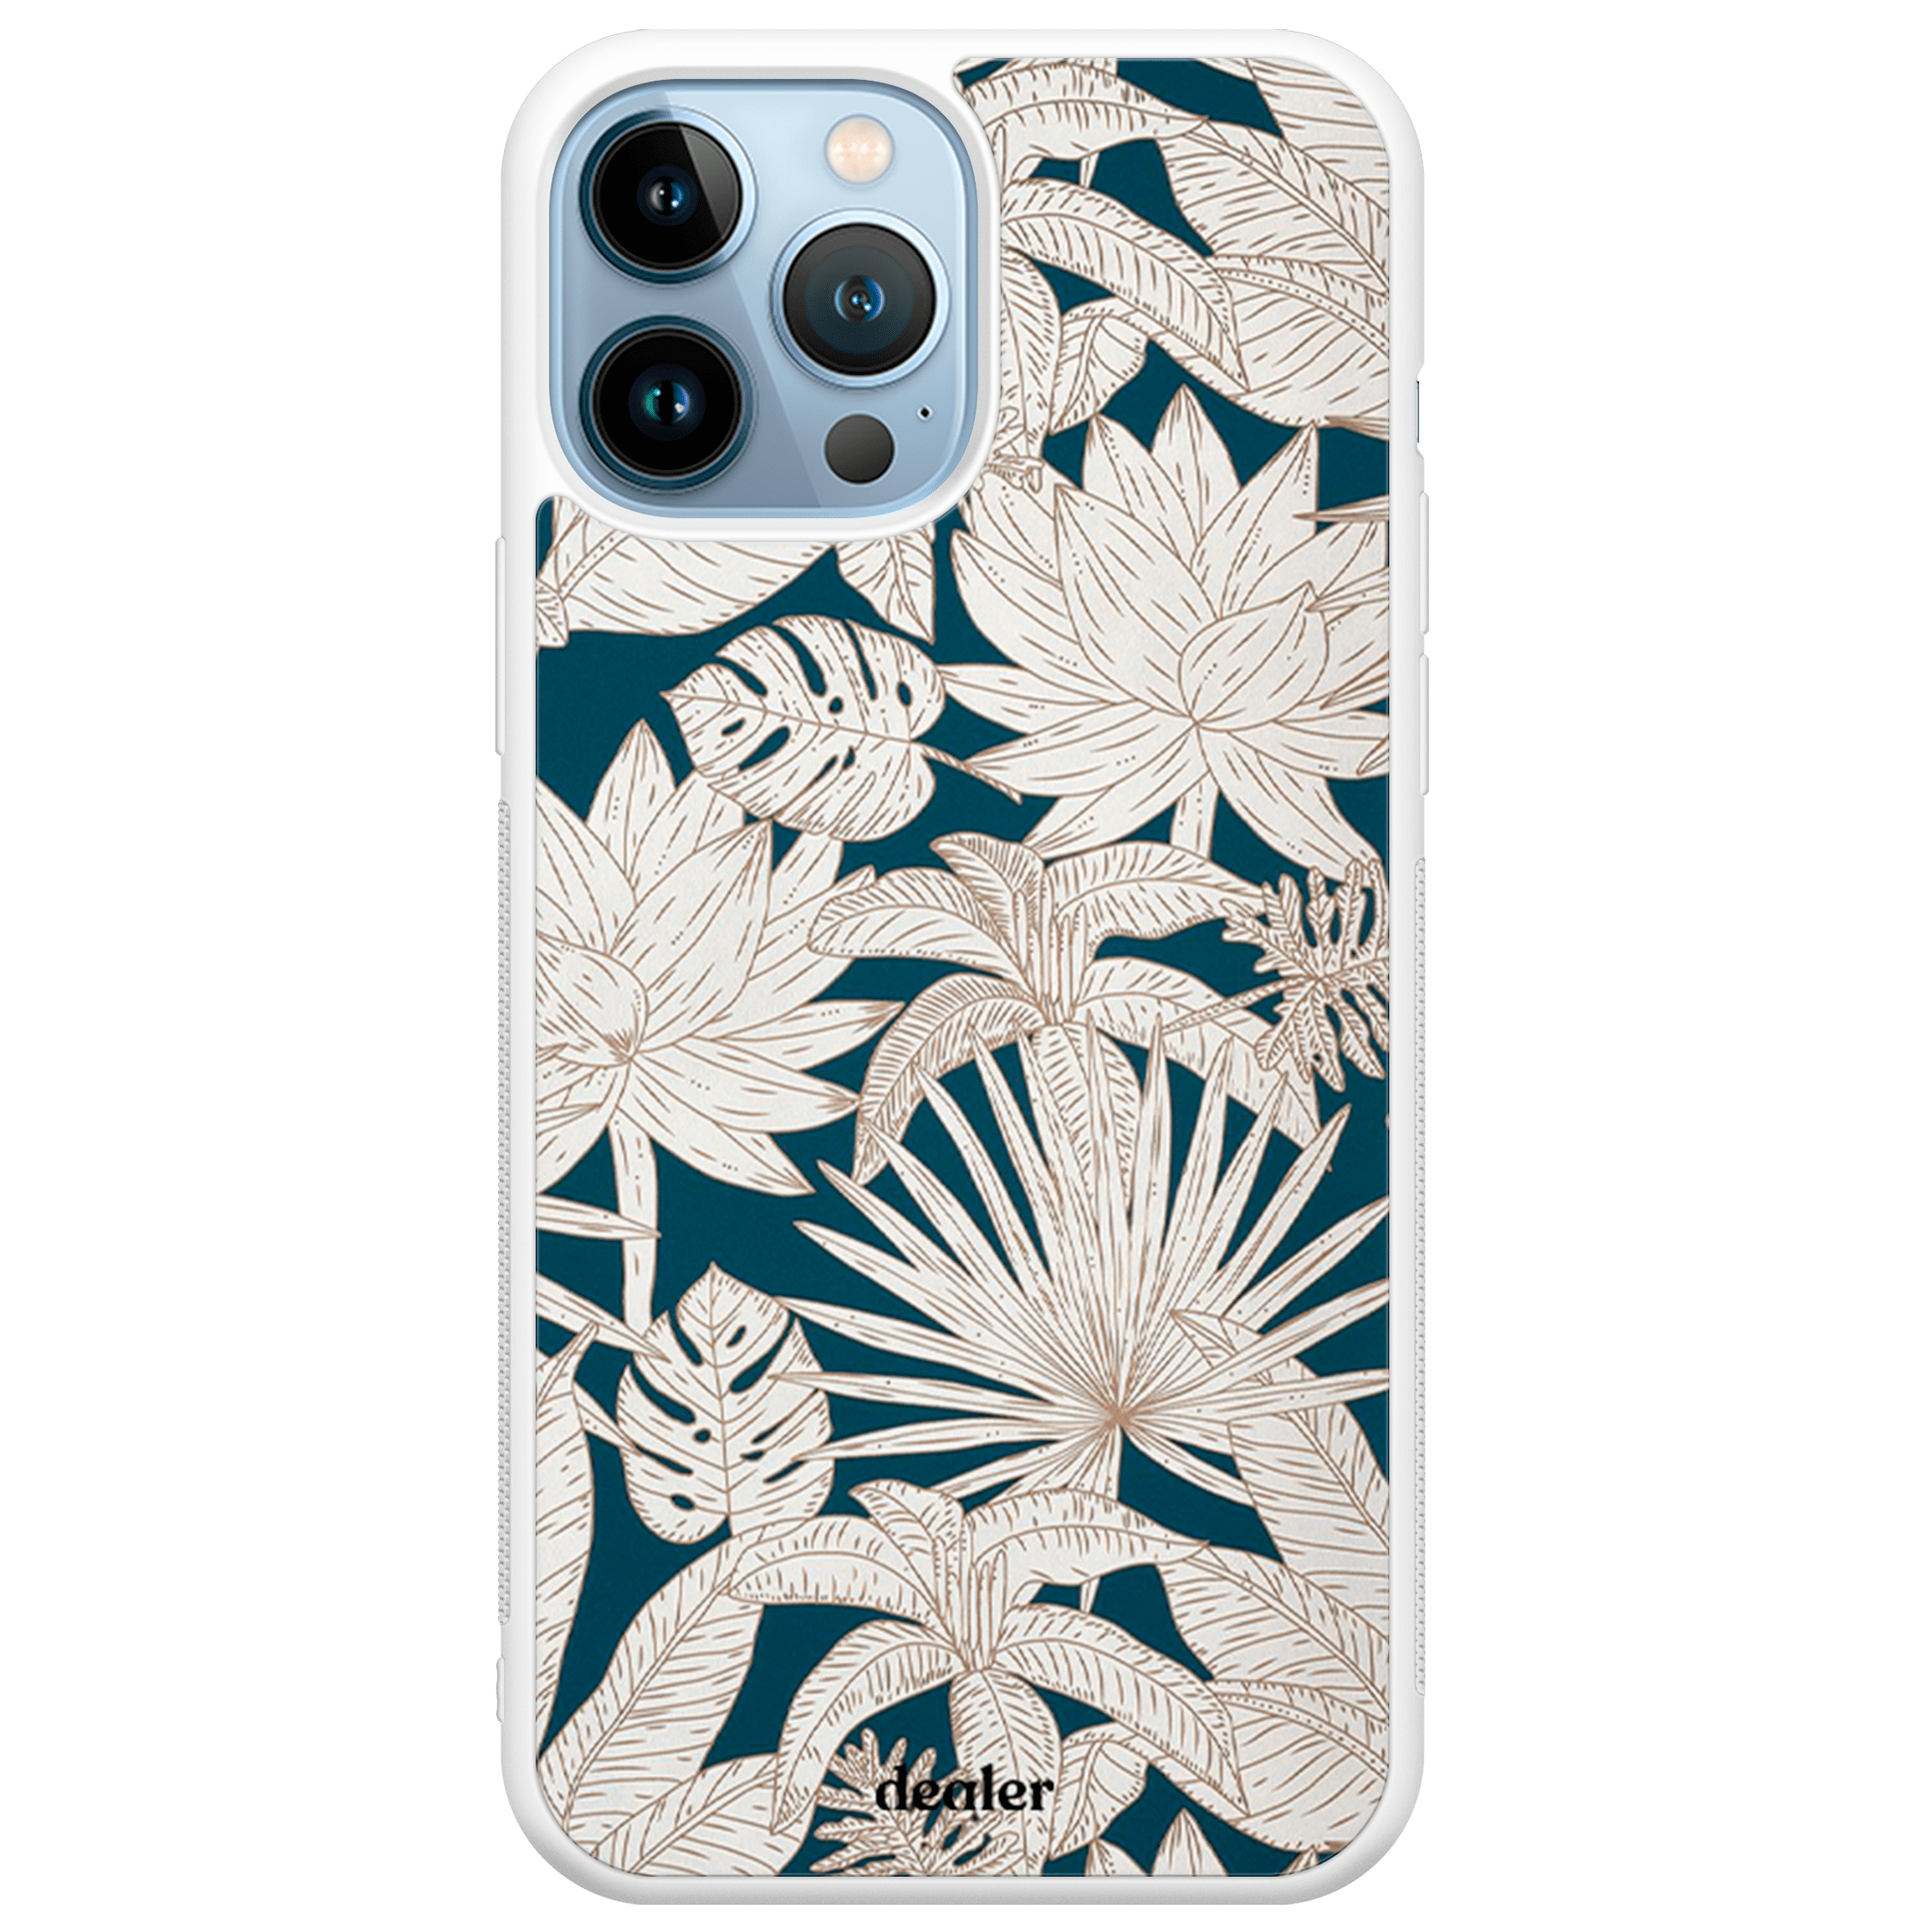 Coque de téléphone avec des fleurs tropicales, jolie coque en silicone renforcé Dealer de coque